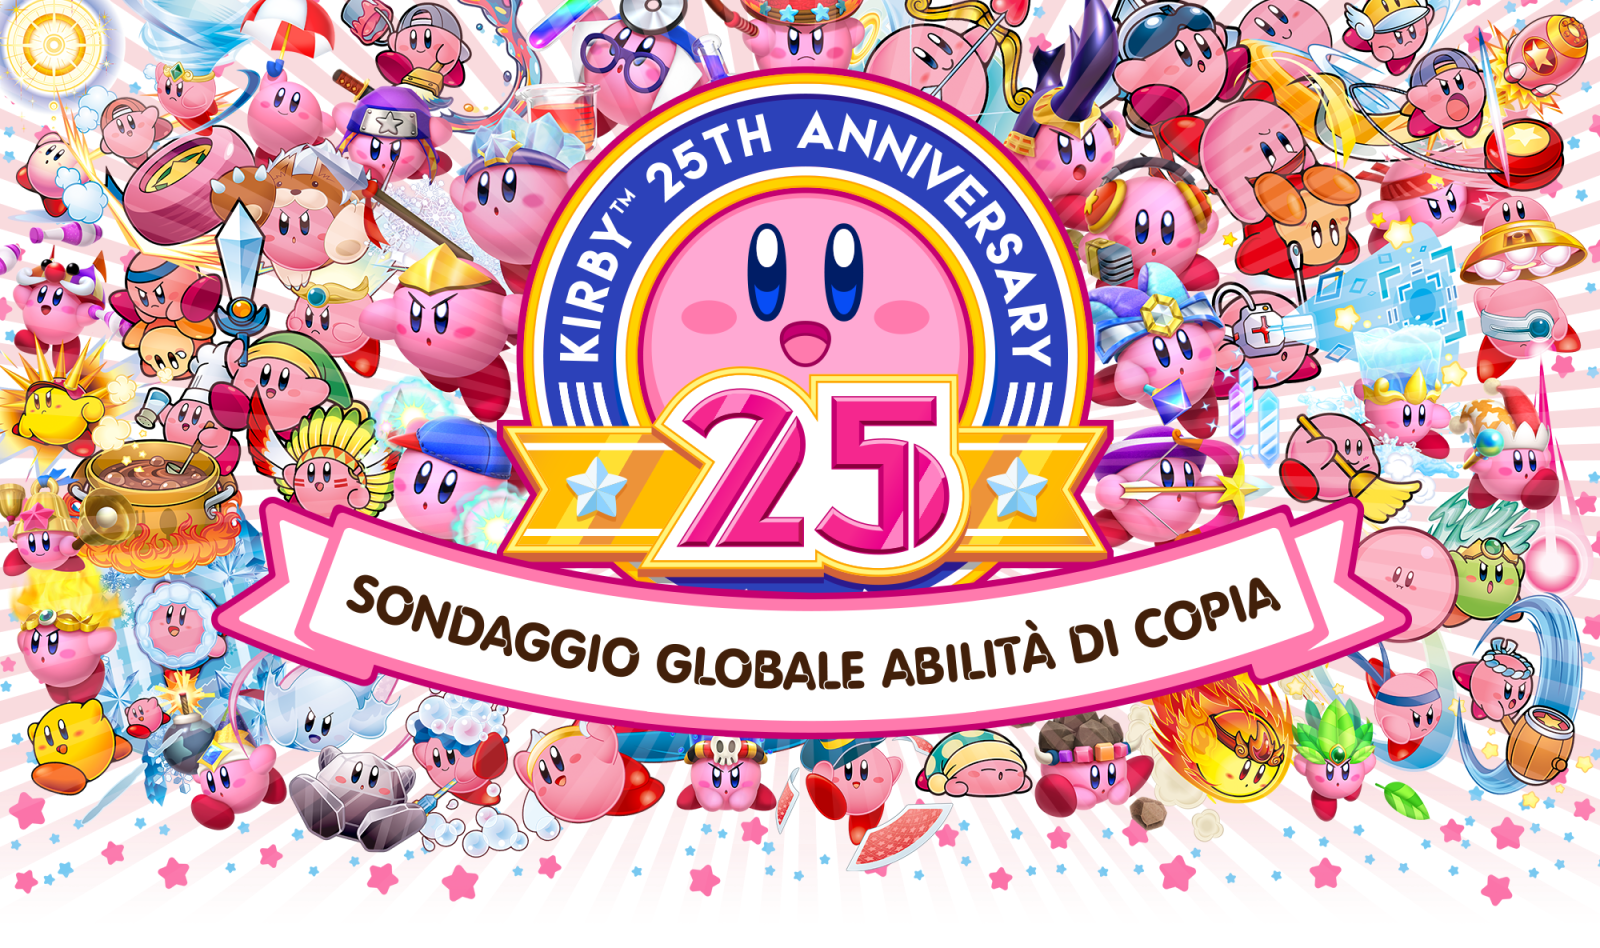 Kirby 25th Anniversary Sondaggio Globale Abilita Di Copia Nintendo